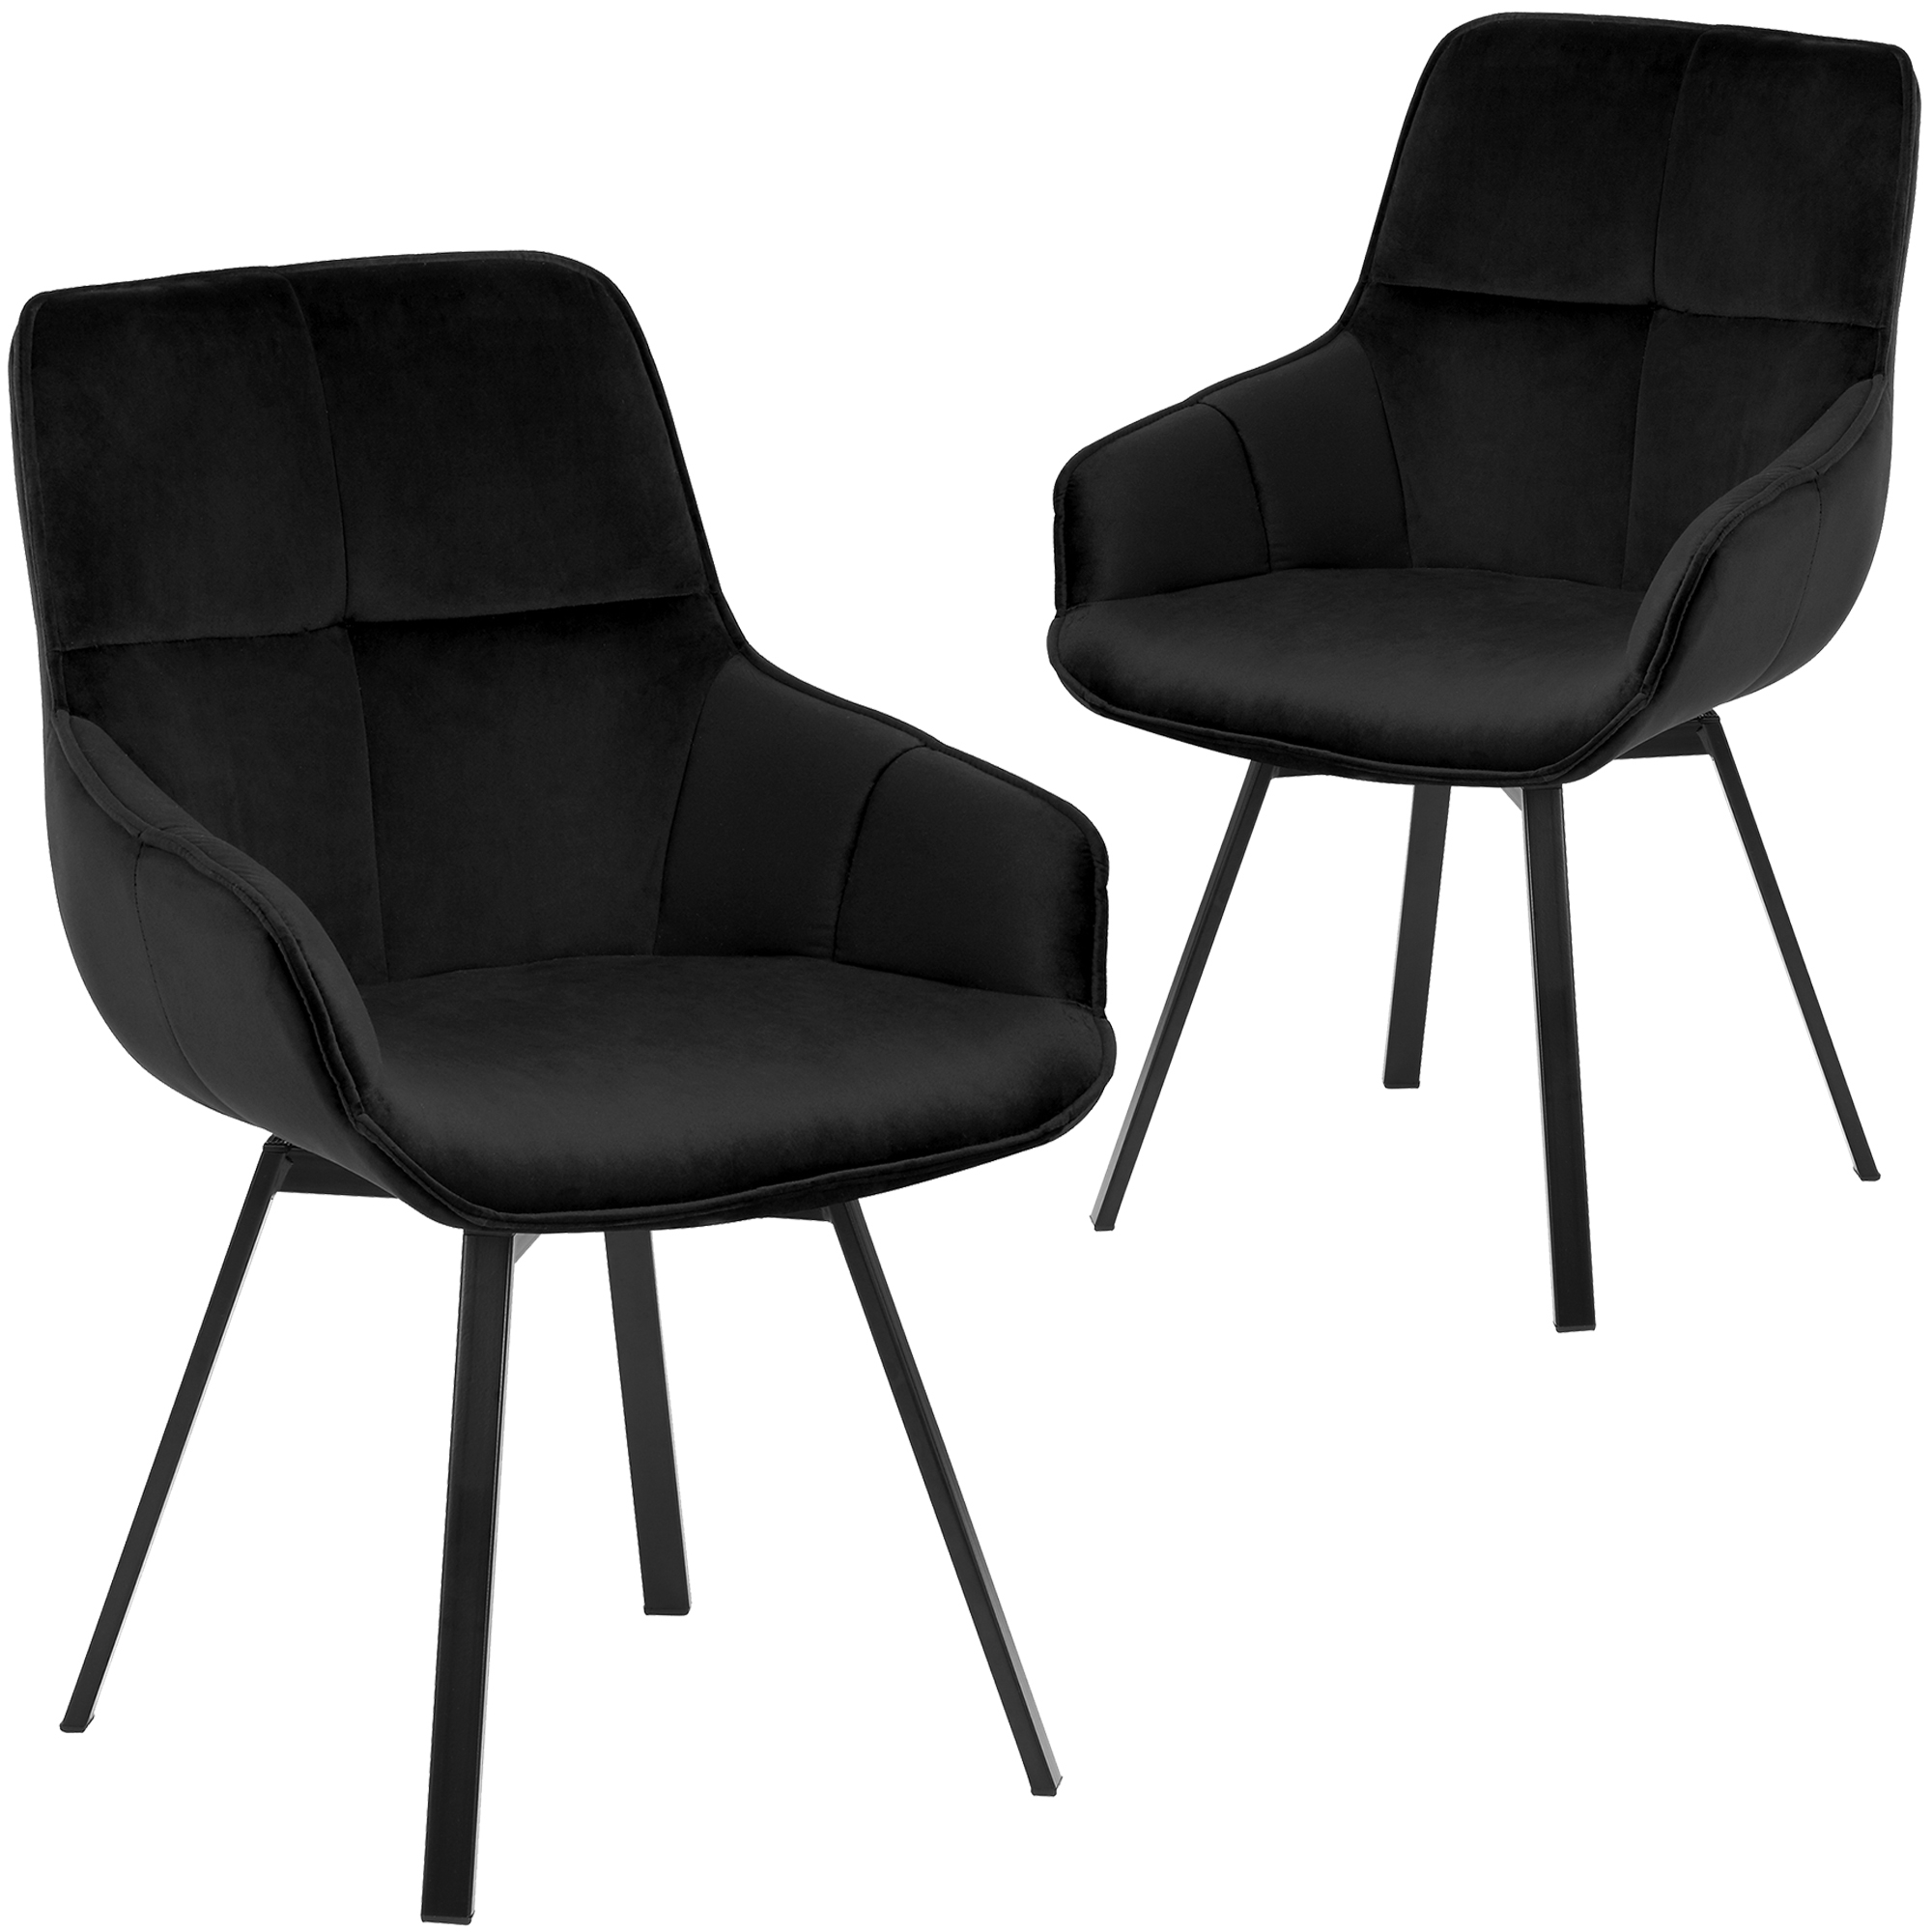 New Set Of 2 Black Krystoffer Velvet Swivel Dining Chairs Ebay